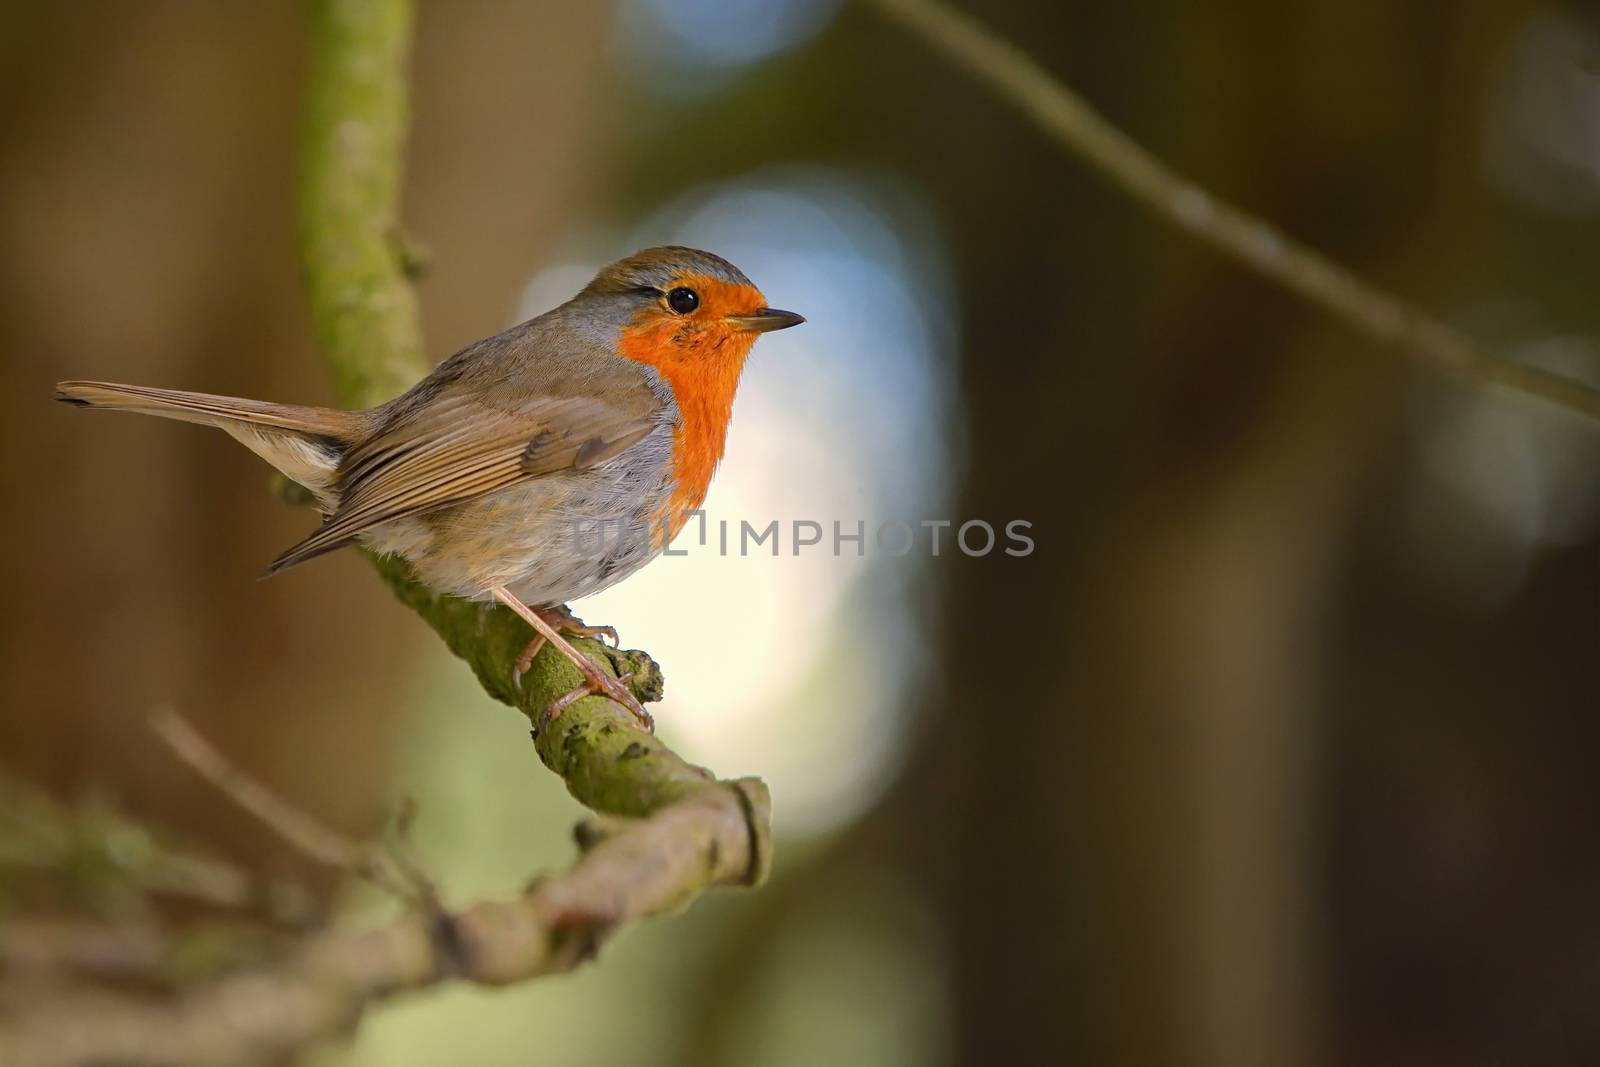 Cute little robin bird on brunch by mady70